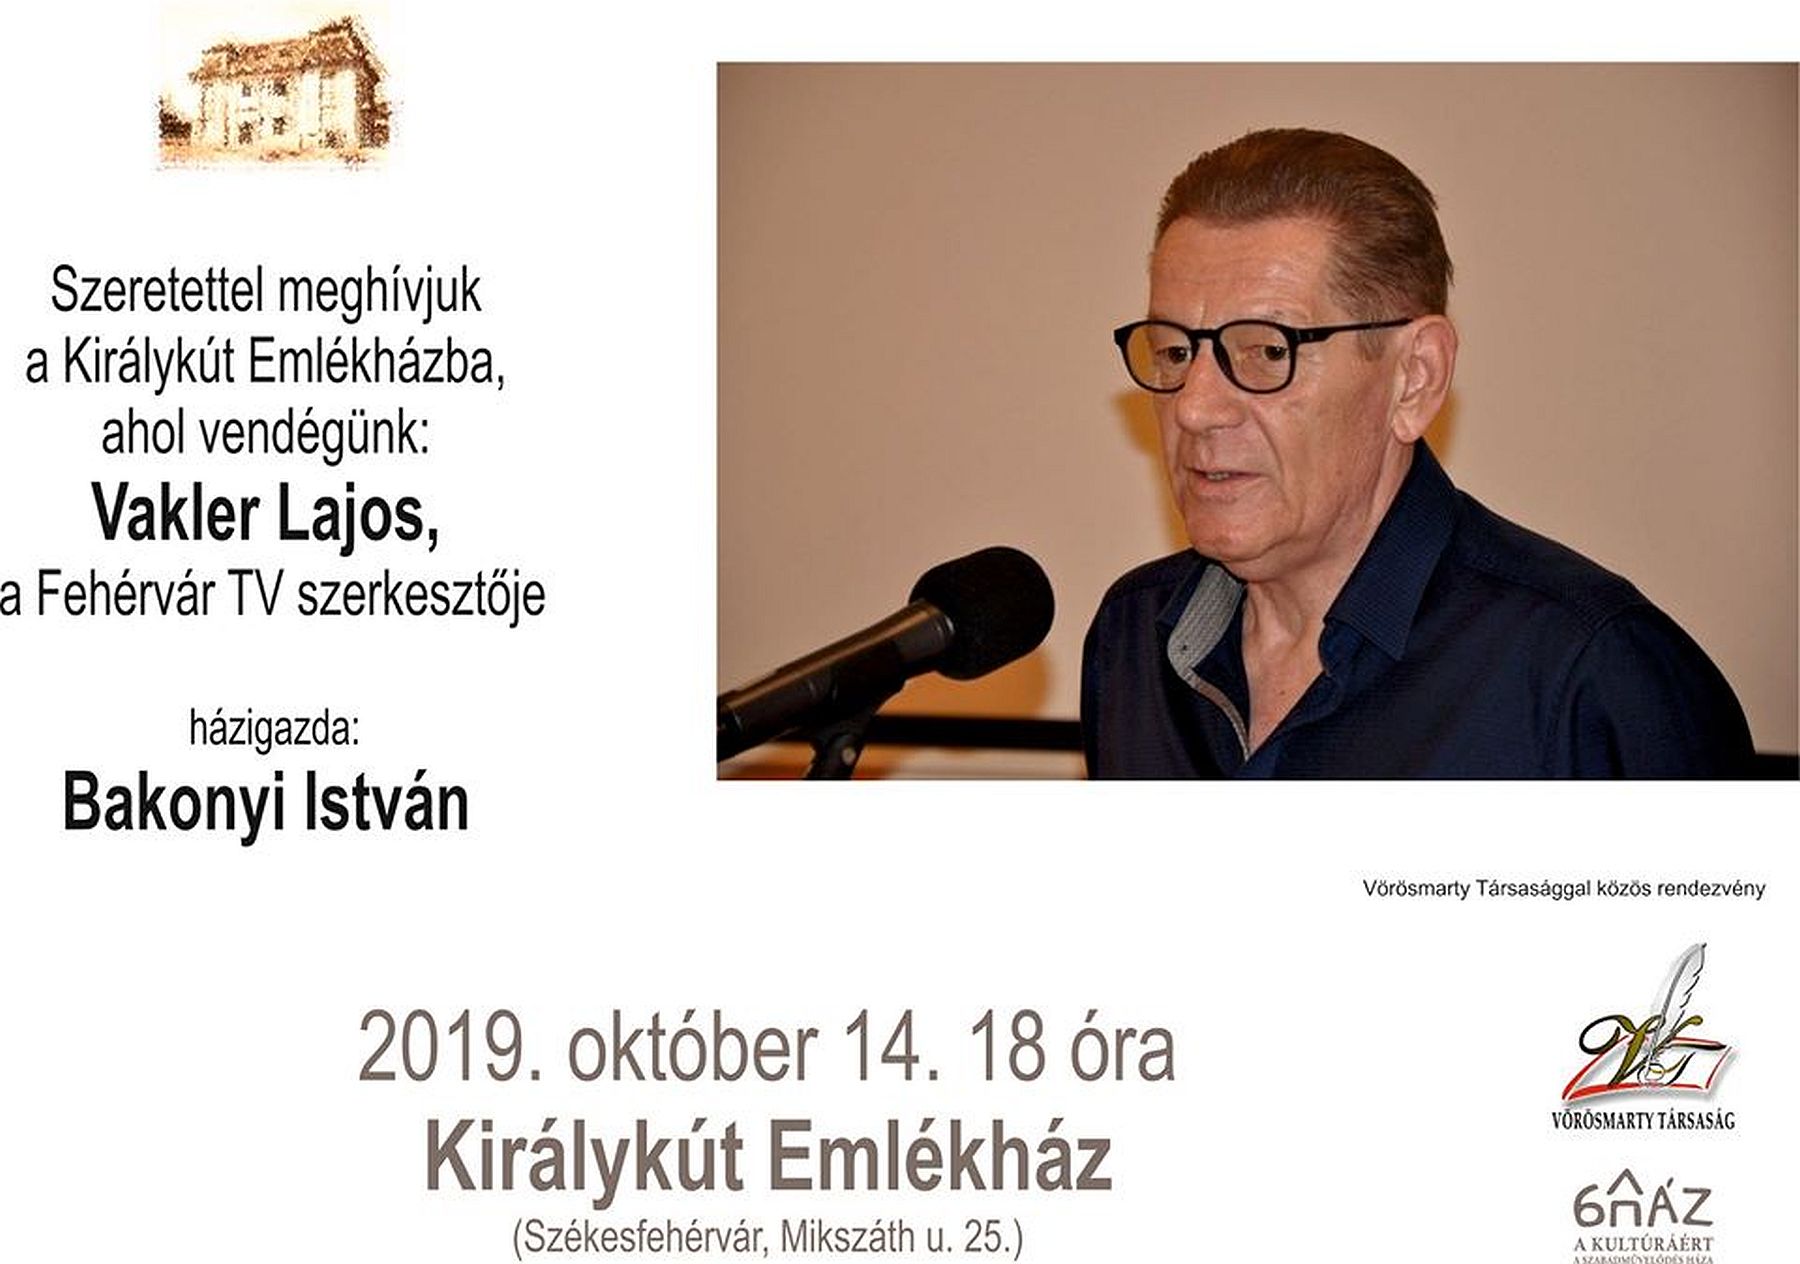 Vakler Lajos, a Fehérvár TV szerkesztője lesz a vendég a Királykút Emlékházban